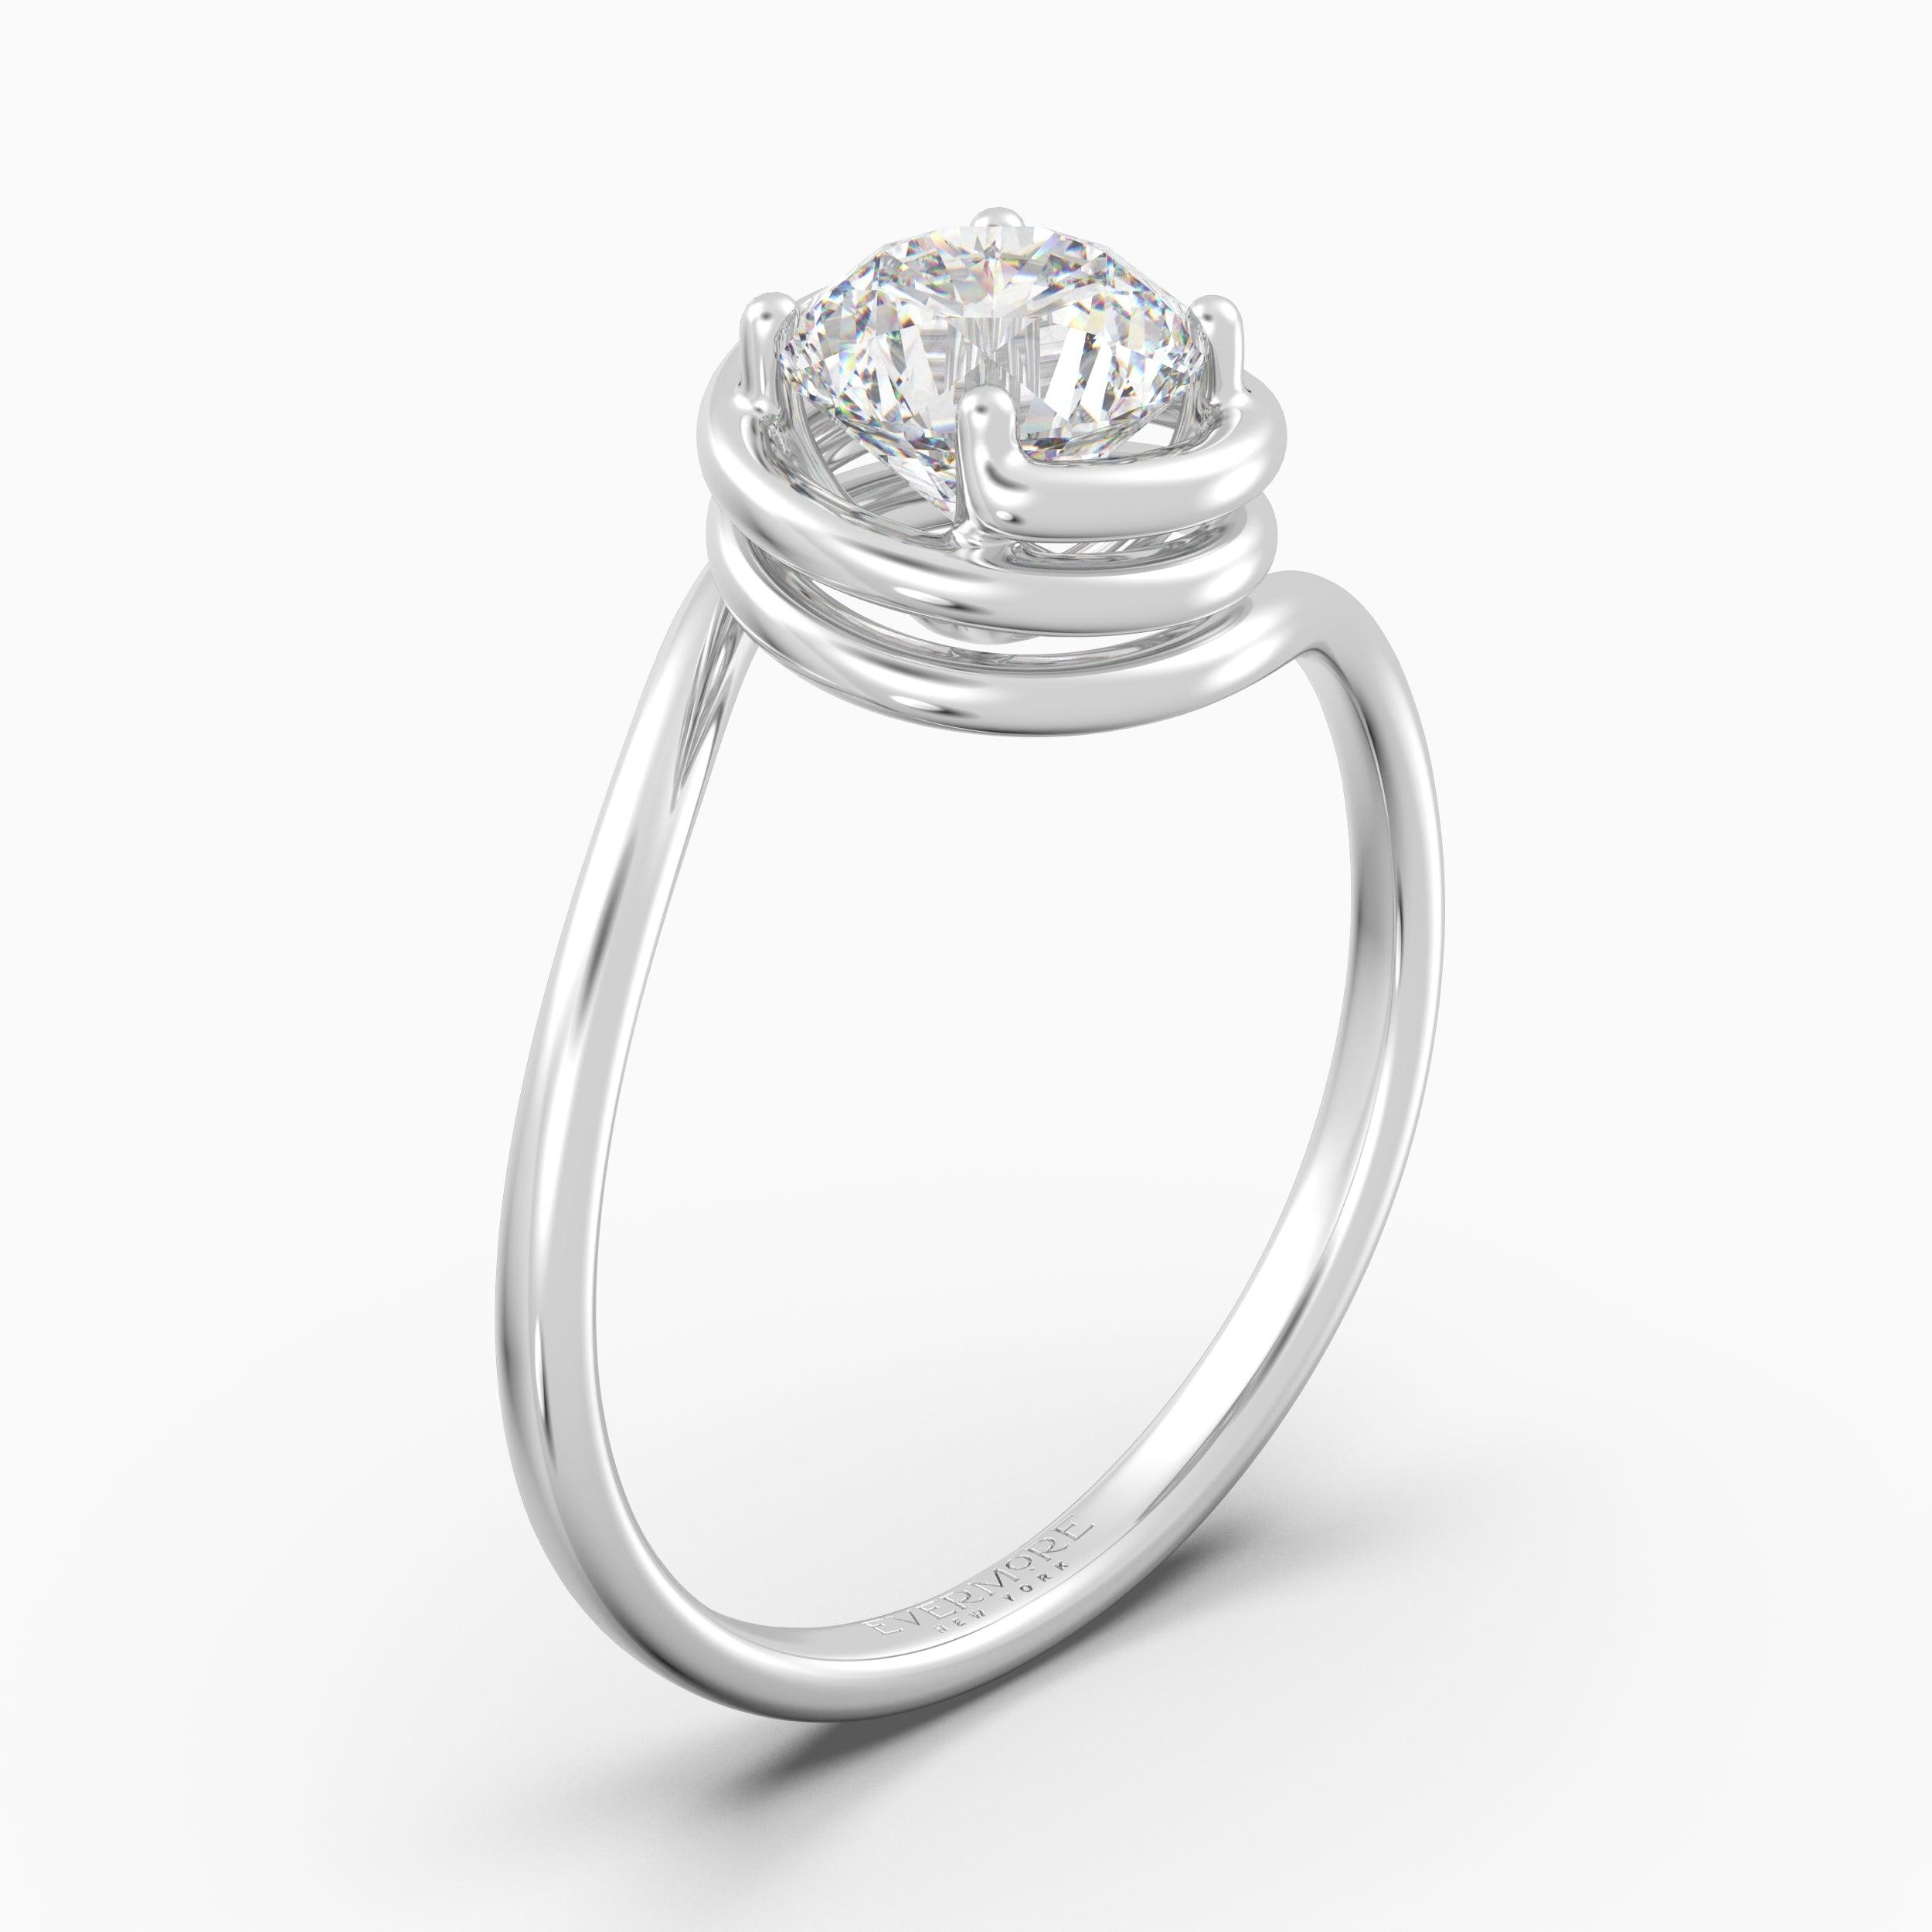 The Spiral Round Brilliant - White Gold / 0.5 ct - Evermore Diamonds